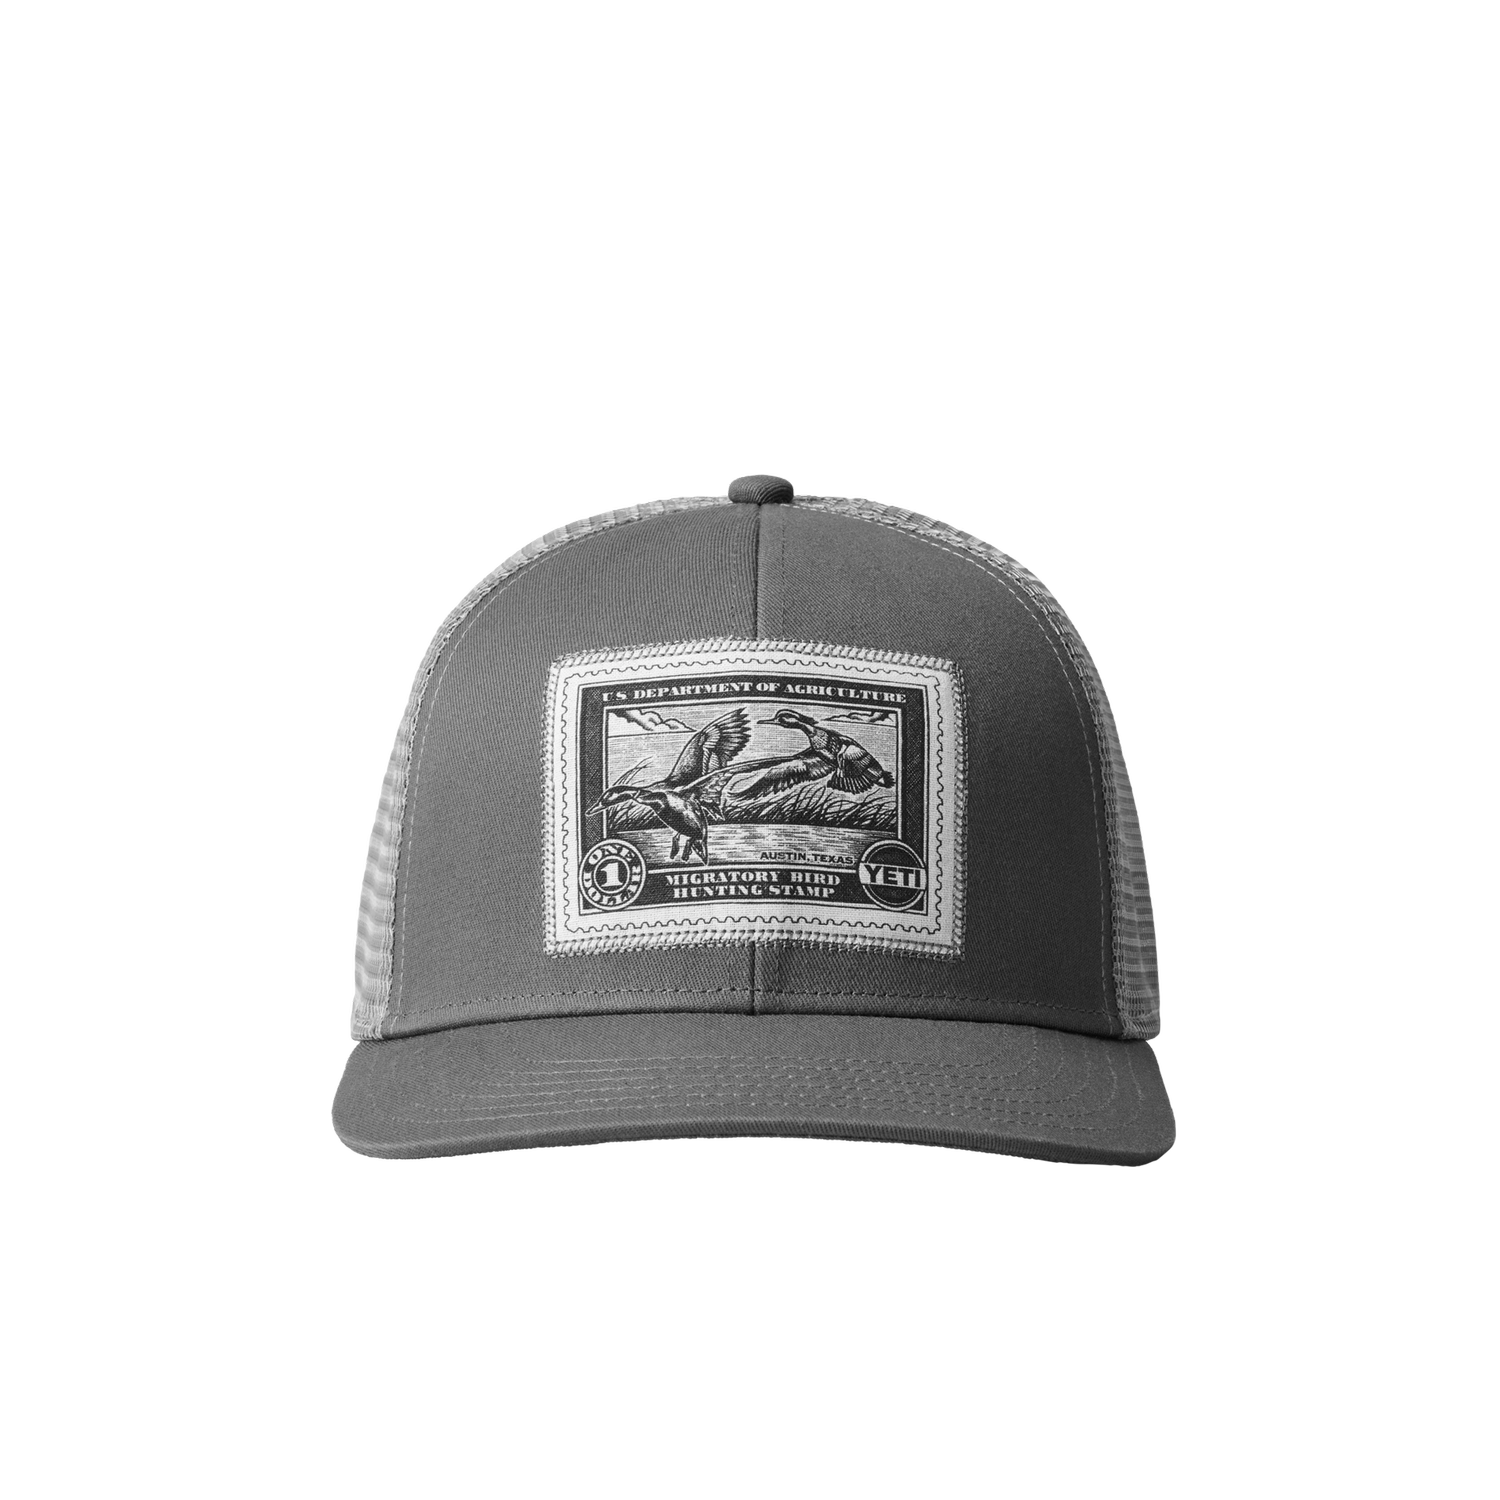 YETI Duck Stamp Trucker Hat